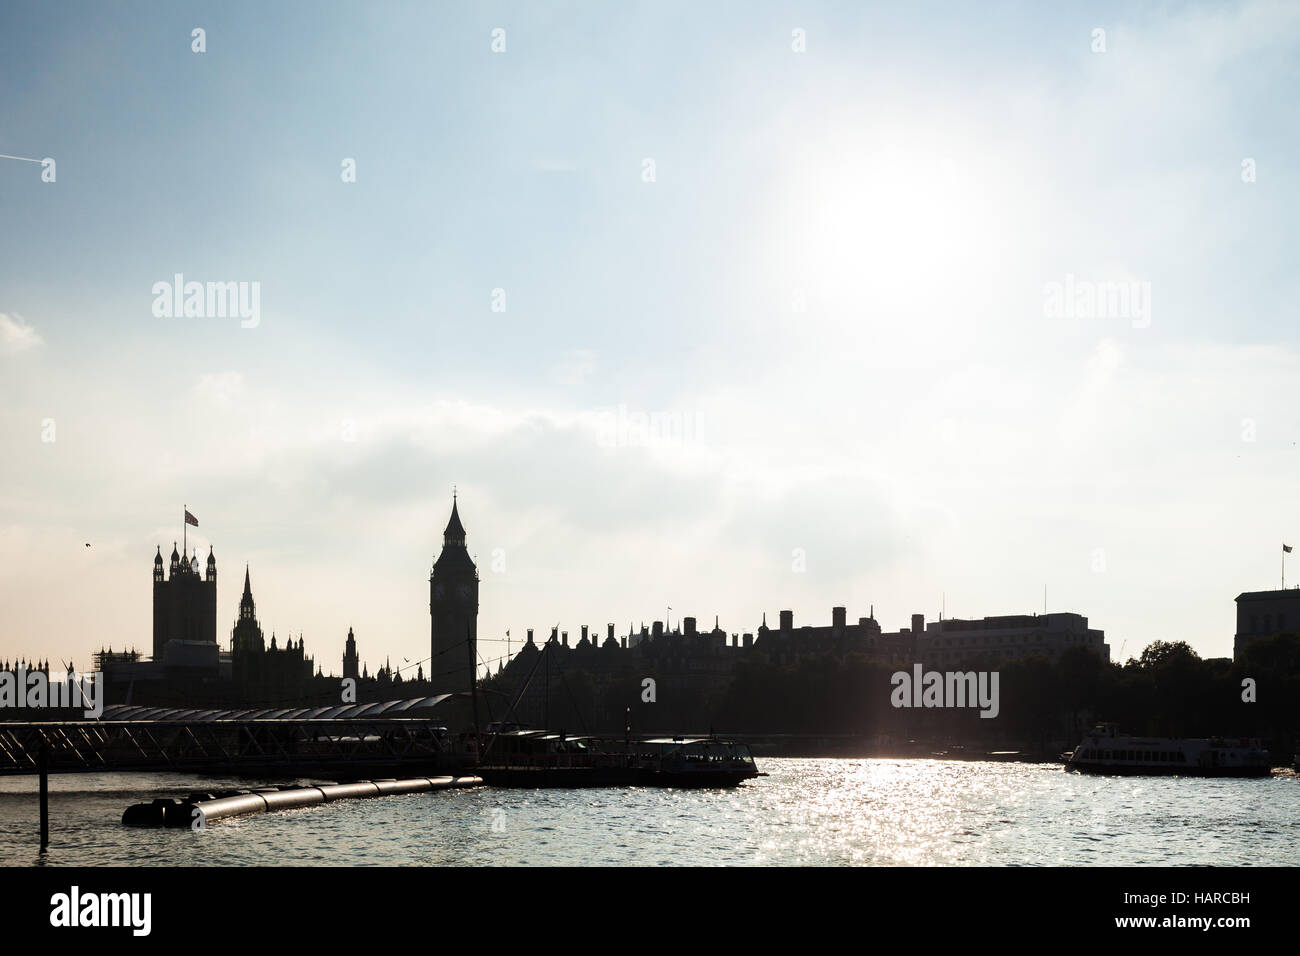 Panorama del horizonte de Londres el Big Ben, el Palacio de Westminster silueta y Thames River Foto de stock